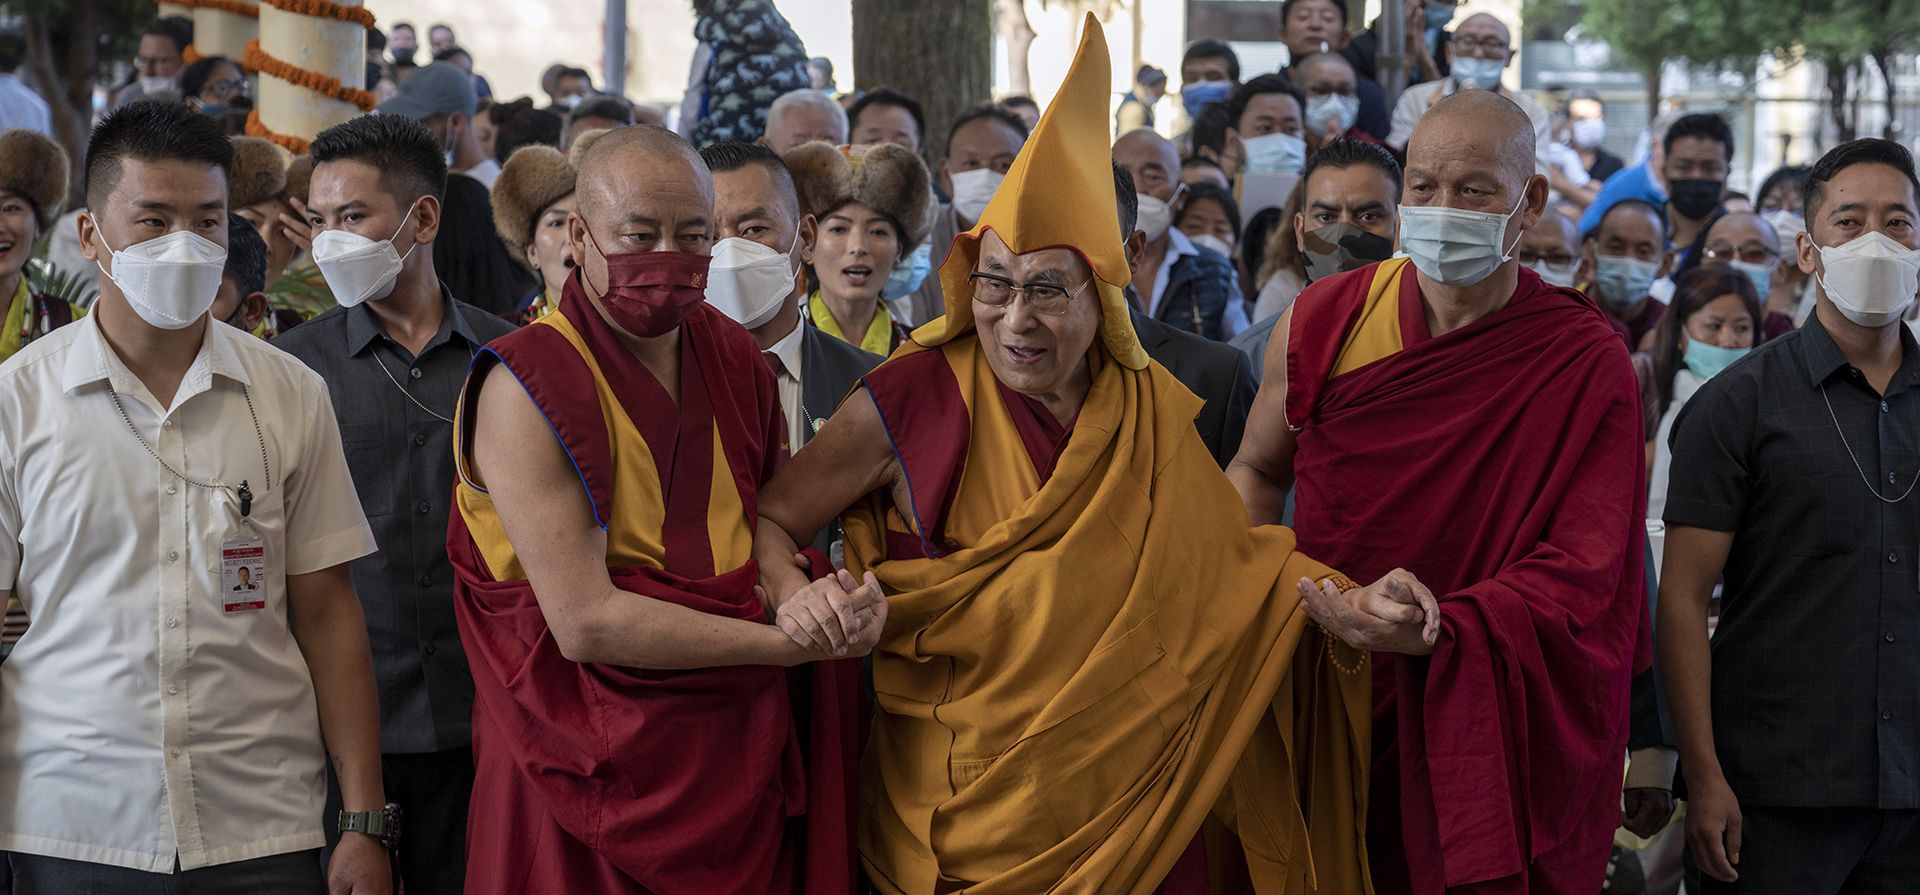 El líder espiritual tibetano, Dalai Lama, con un sombrero ceremonial, llega al templo Tsuglakhang en Dharmsala, India, el viernes 24 de junio de 2022. Los exiliados oraron por la larga vida del líder tibetano. 